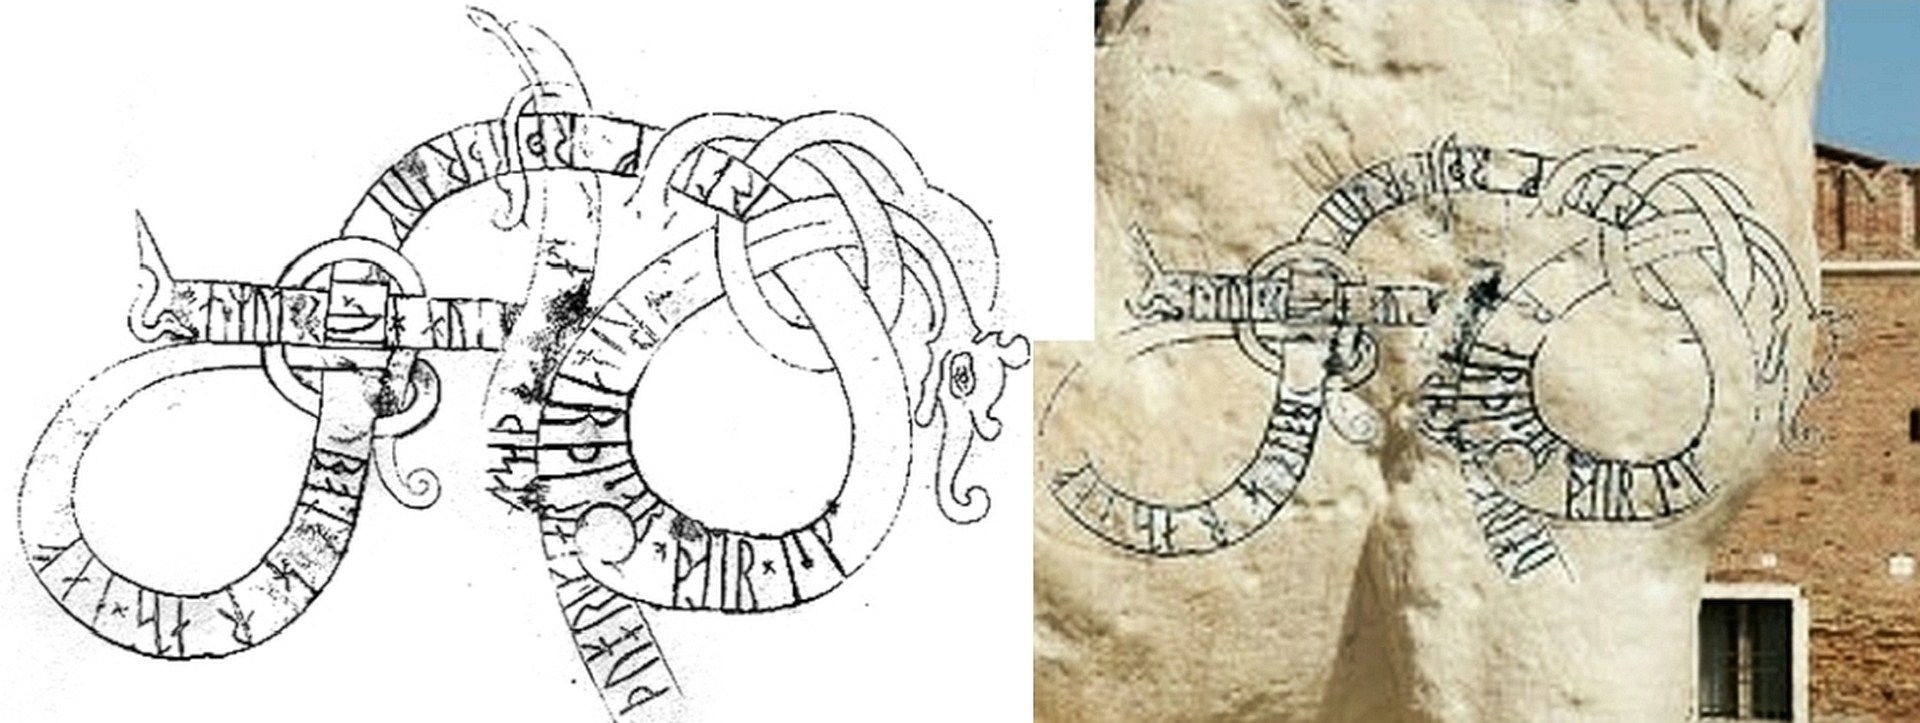 Konnten Wikinger eine Runen-Schrift an einer Löwen-Statue hinterlassen? Ja, schon - aber wie kam der riesige Löwe nach Venedig?